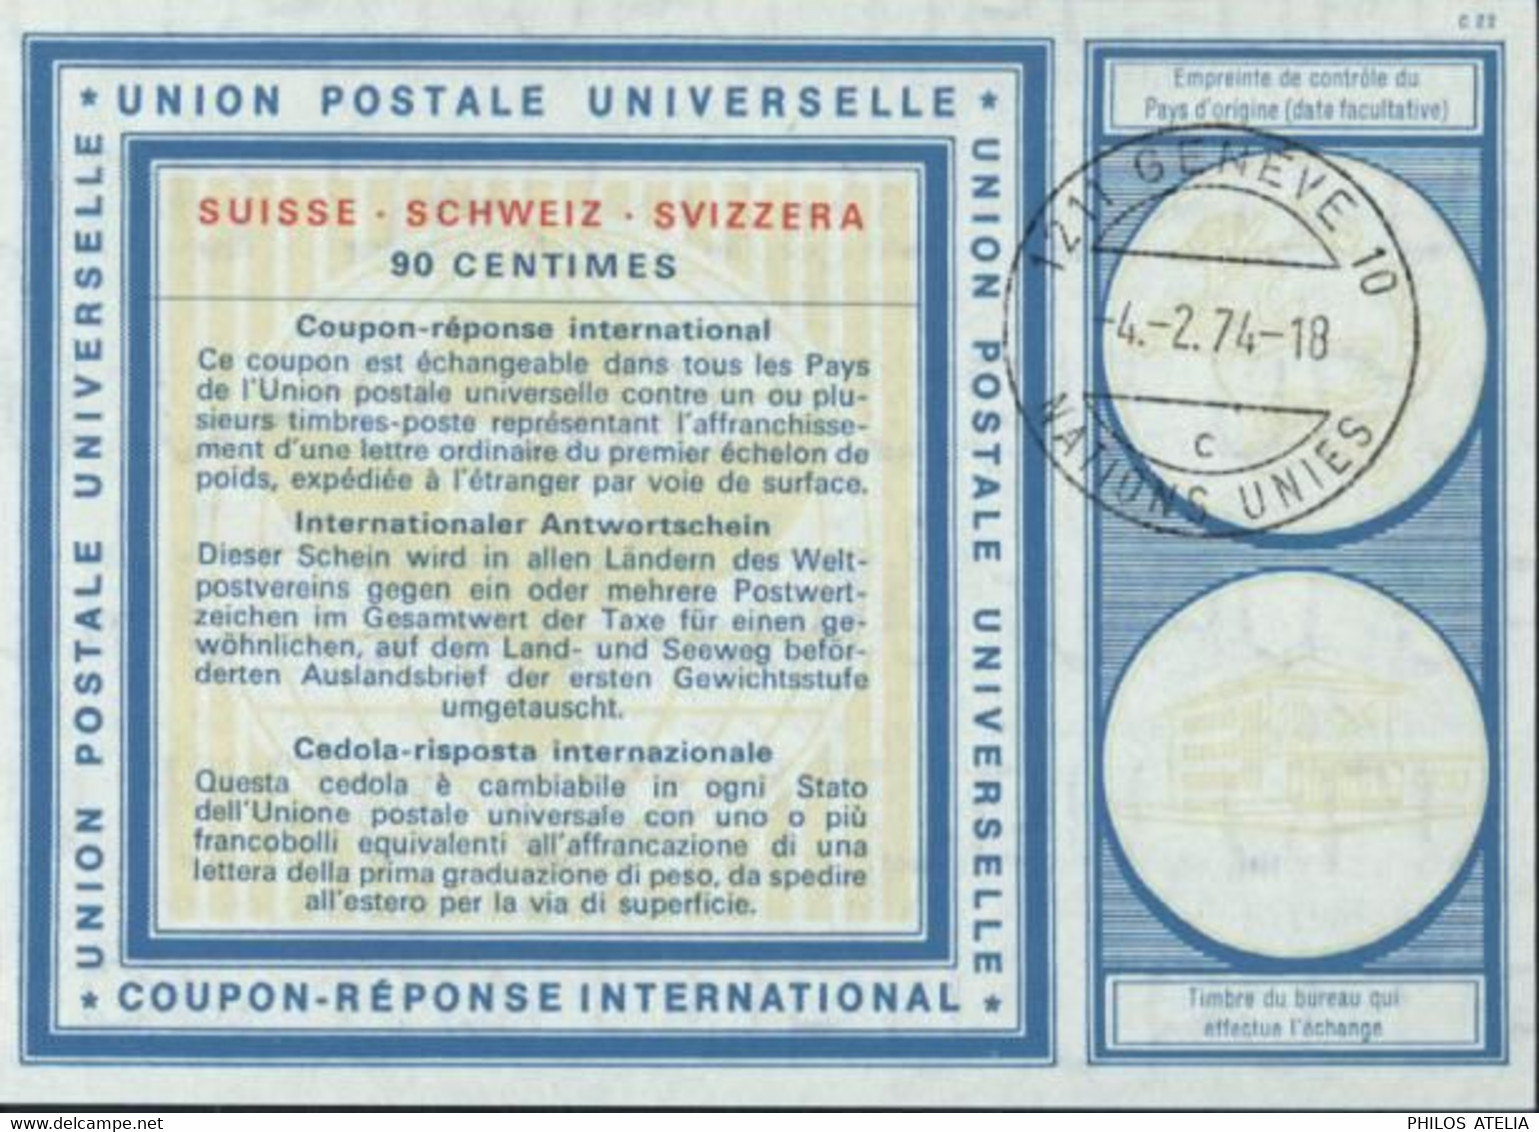 Coupon Réponse International UPU Suisse 90 Cts CAD 1211 Genève 10 Nations Unies 4 2 74 - 18 C - Storia Postale